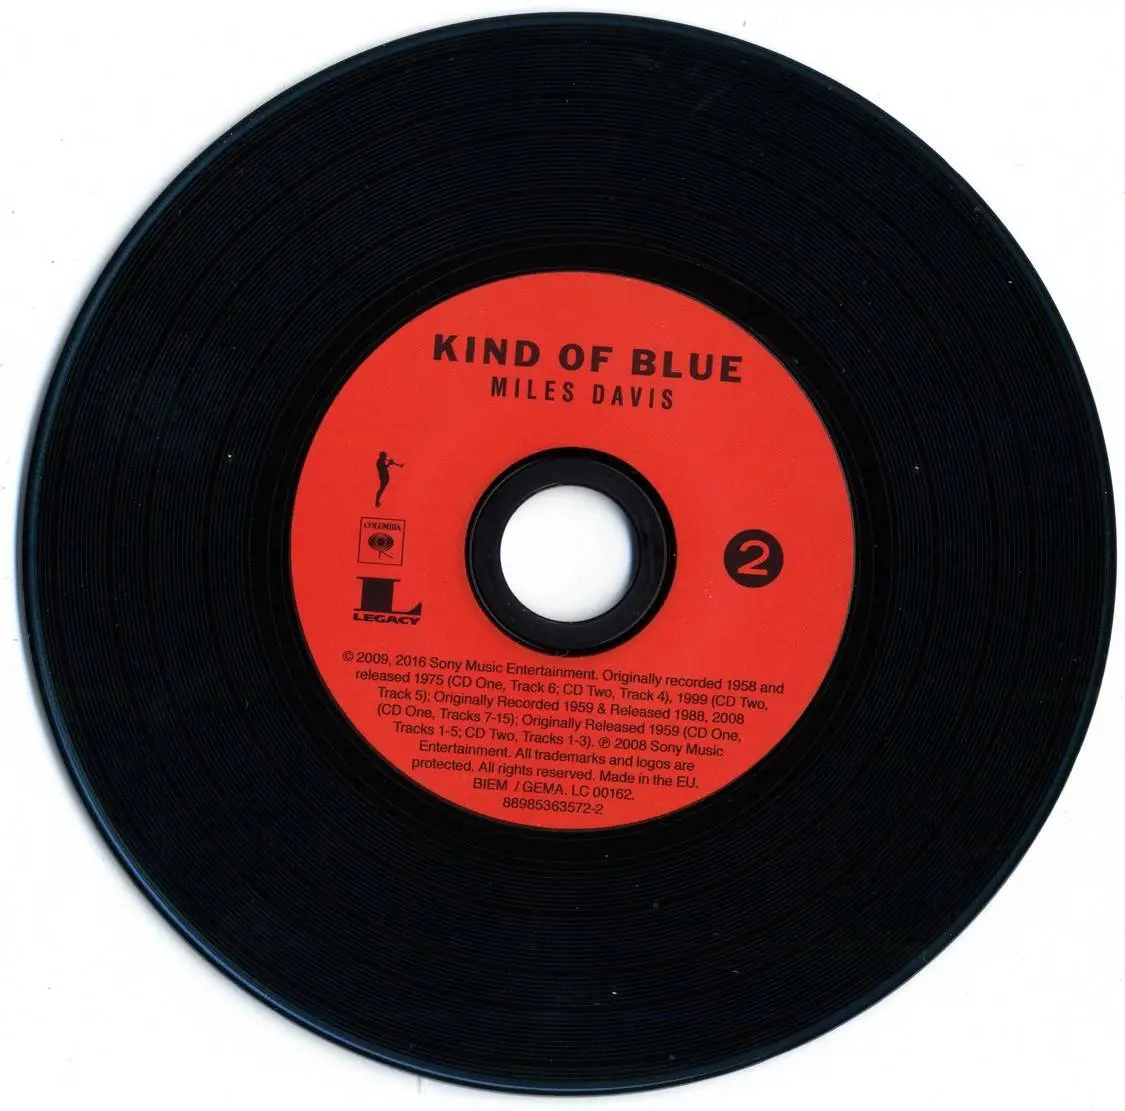 Blue miles. Miles Davis - kind of Blue (1959). Kind of Blue Майлз Дэвис. Miles Davis kind of Blue обложка. Голубая пластинка виниловая Майлз Дэвис.